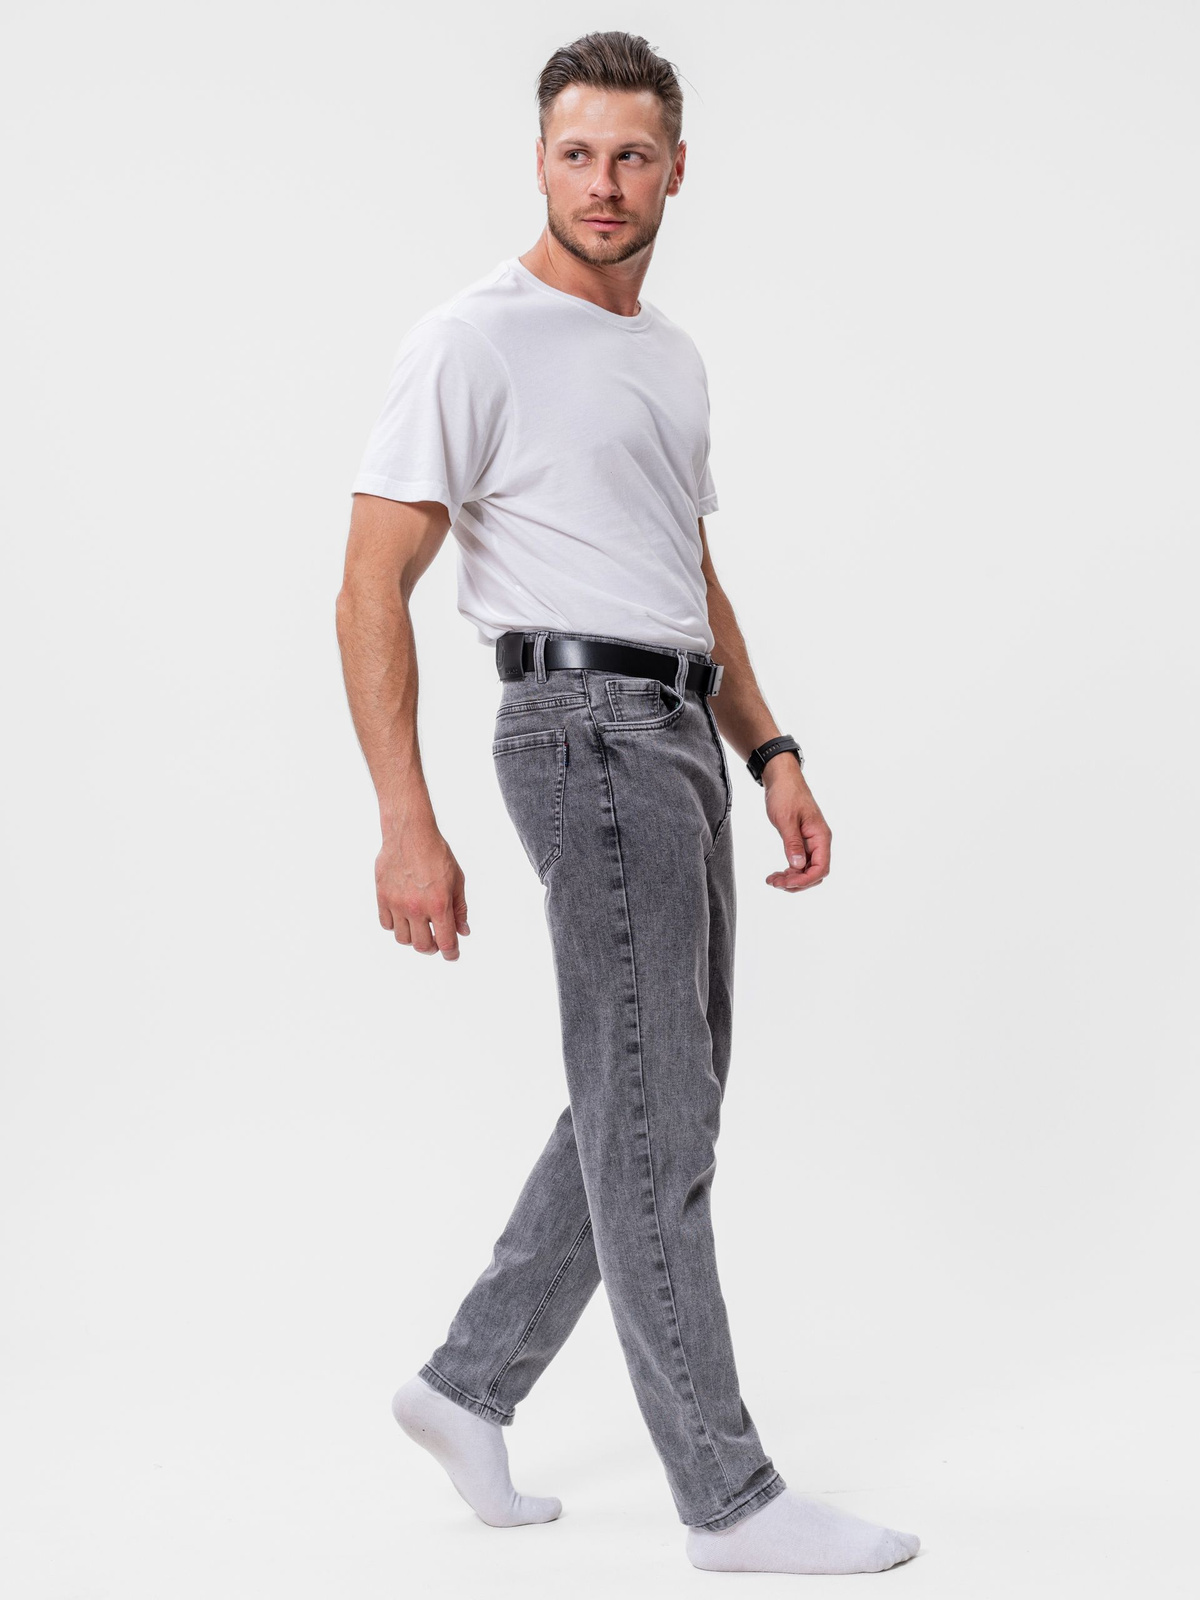 Модель ремня отлично подходит как для повседневного, так и для классического стиля, и идеально подходит для мужчин, подростков и мальчиков. Уникальный дизайн ремня не широкий и не узкий, поэтому подойдет под стандартную петлю в брюках или джинсах.